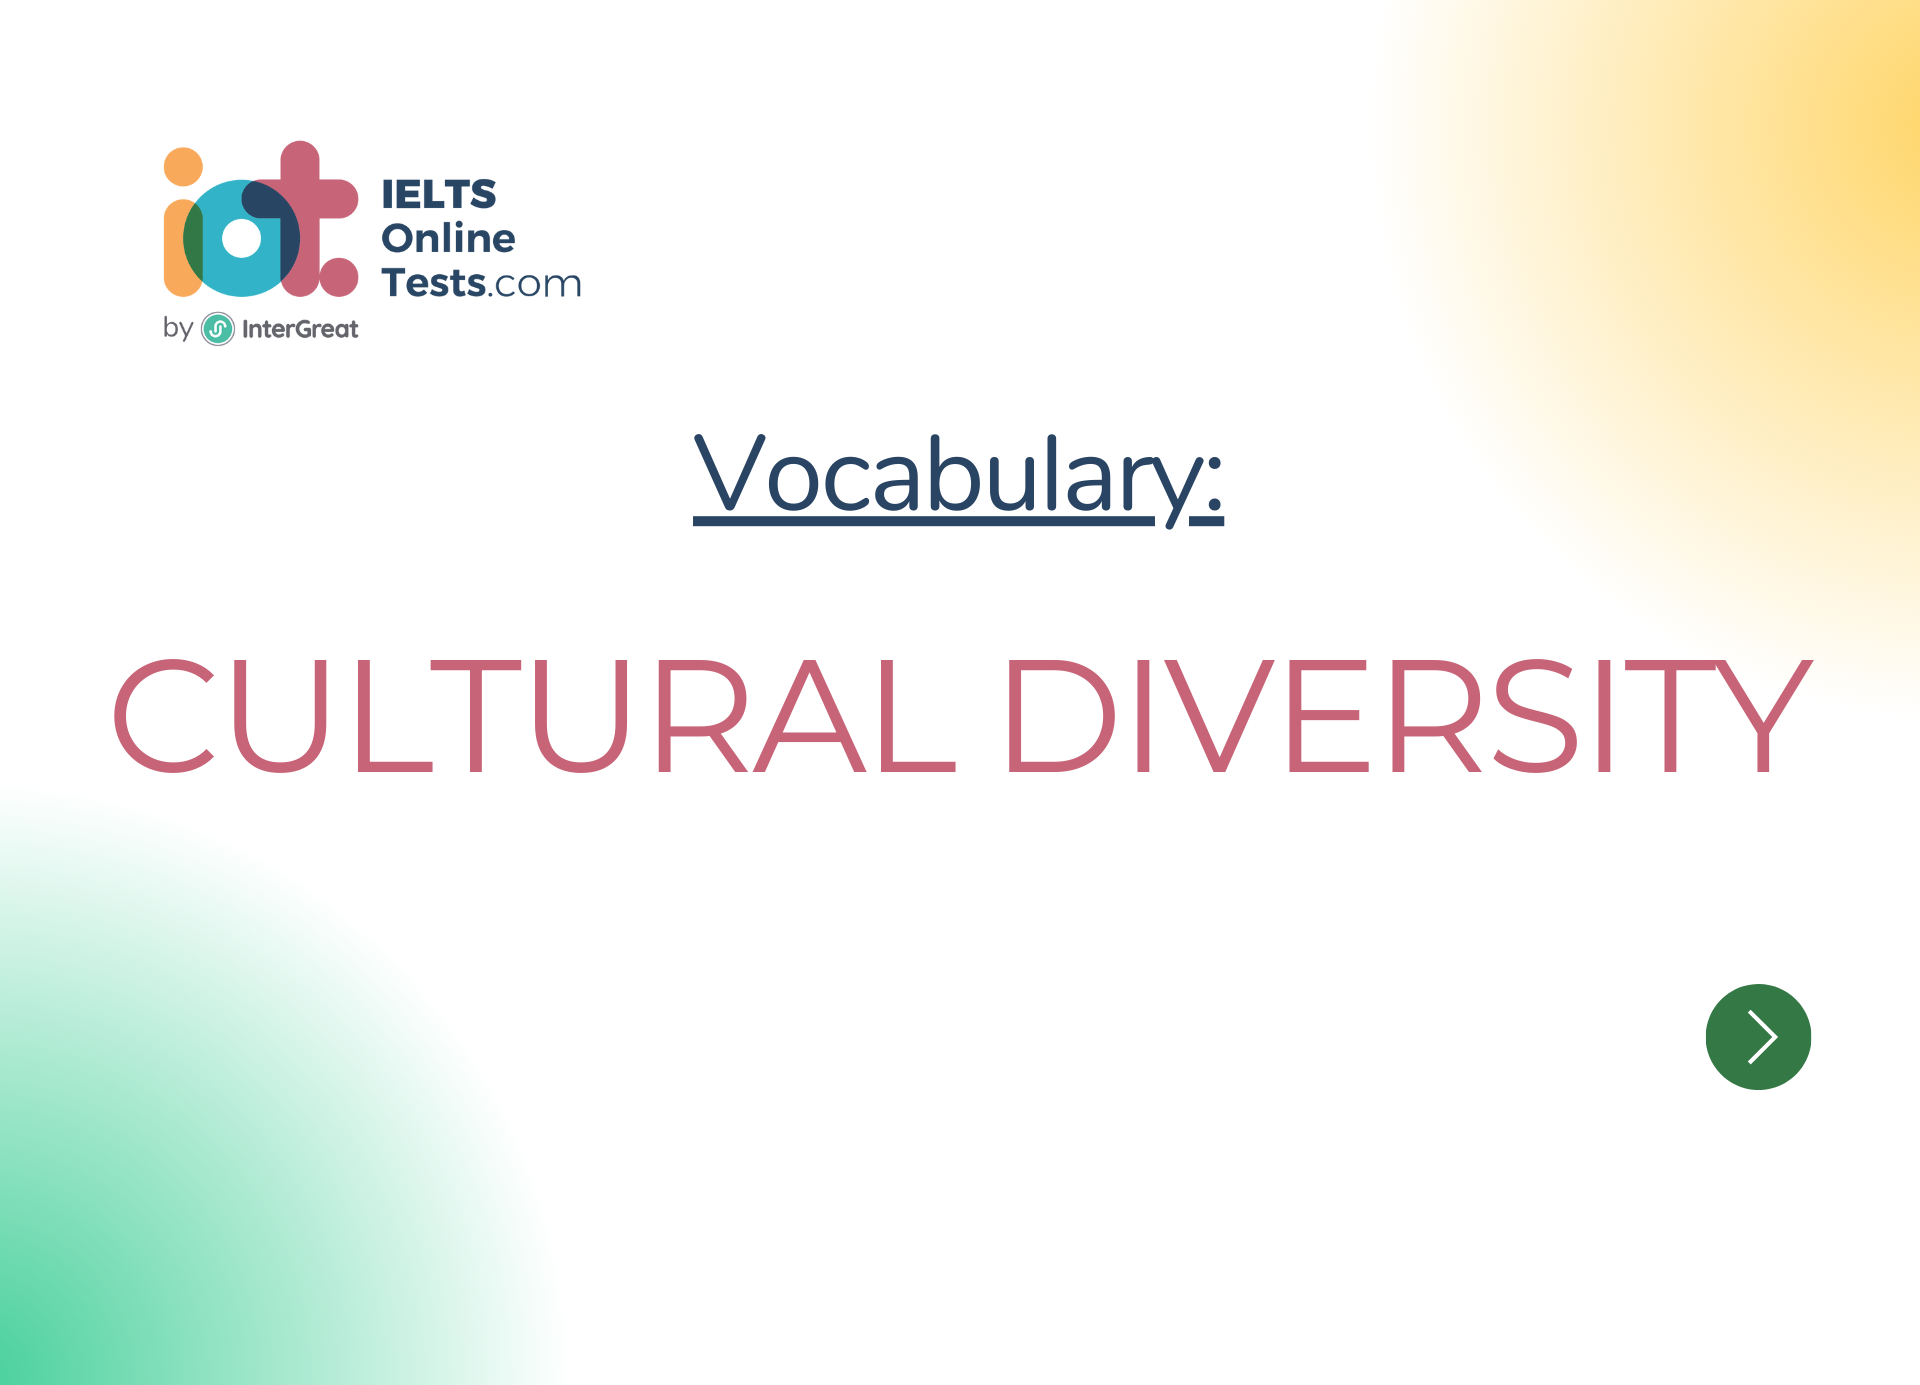 Đa dạng văn hóa (Cultural diversity)